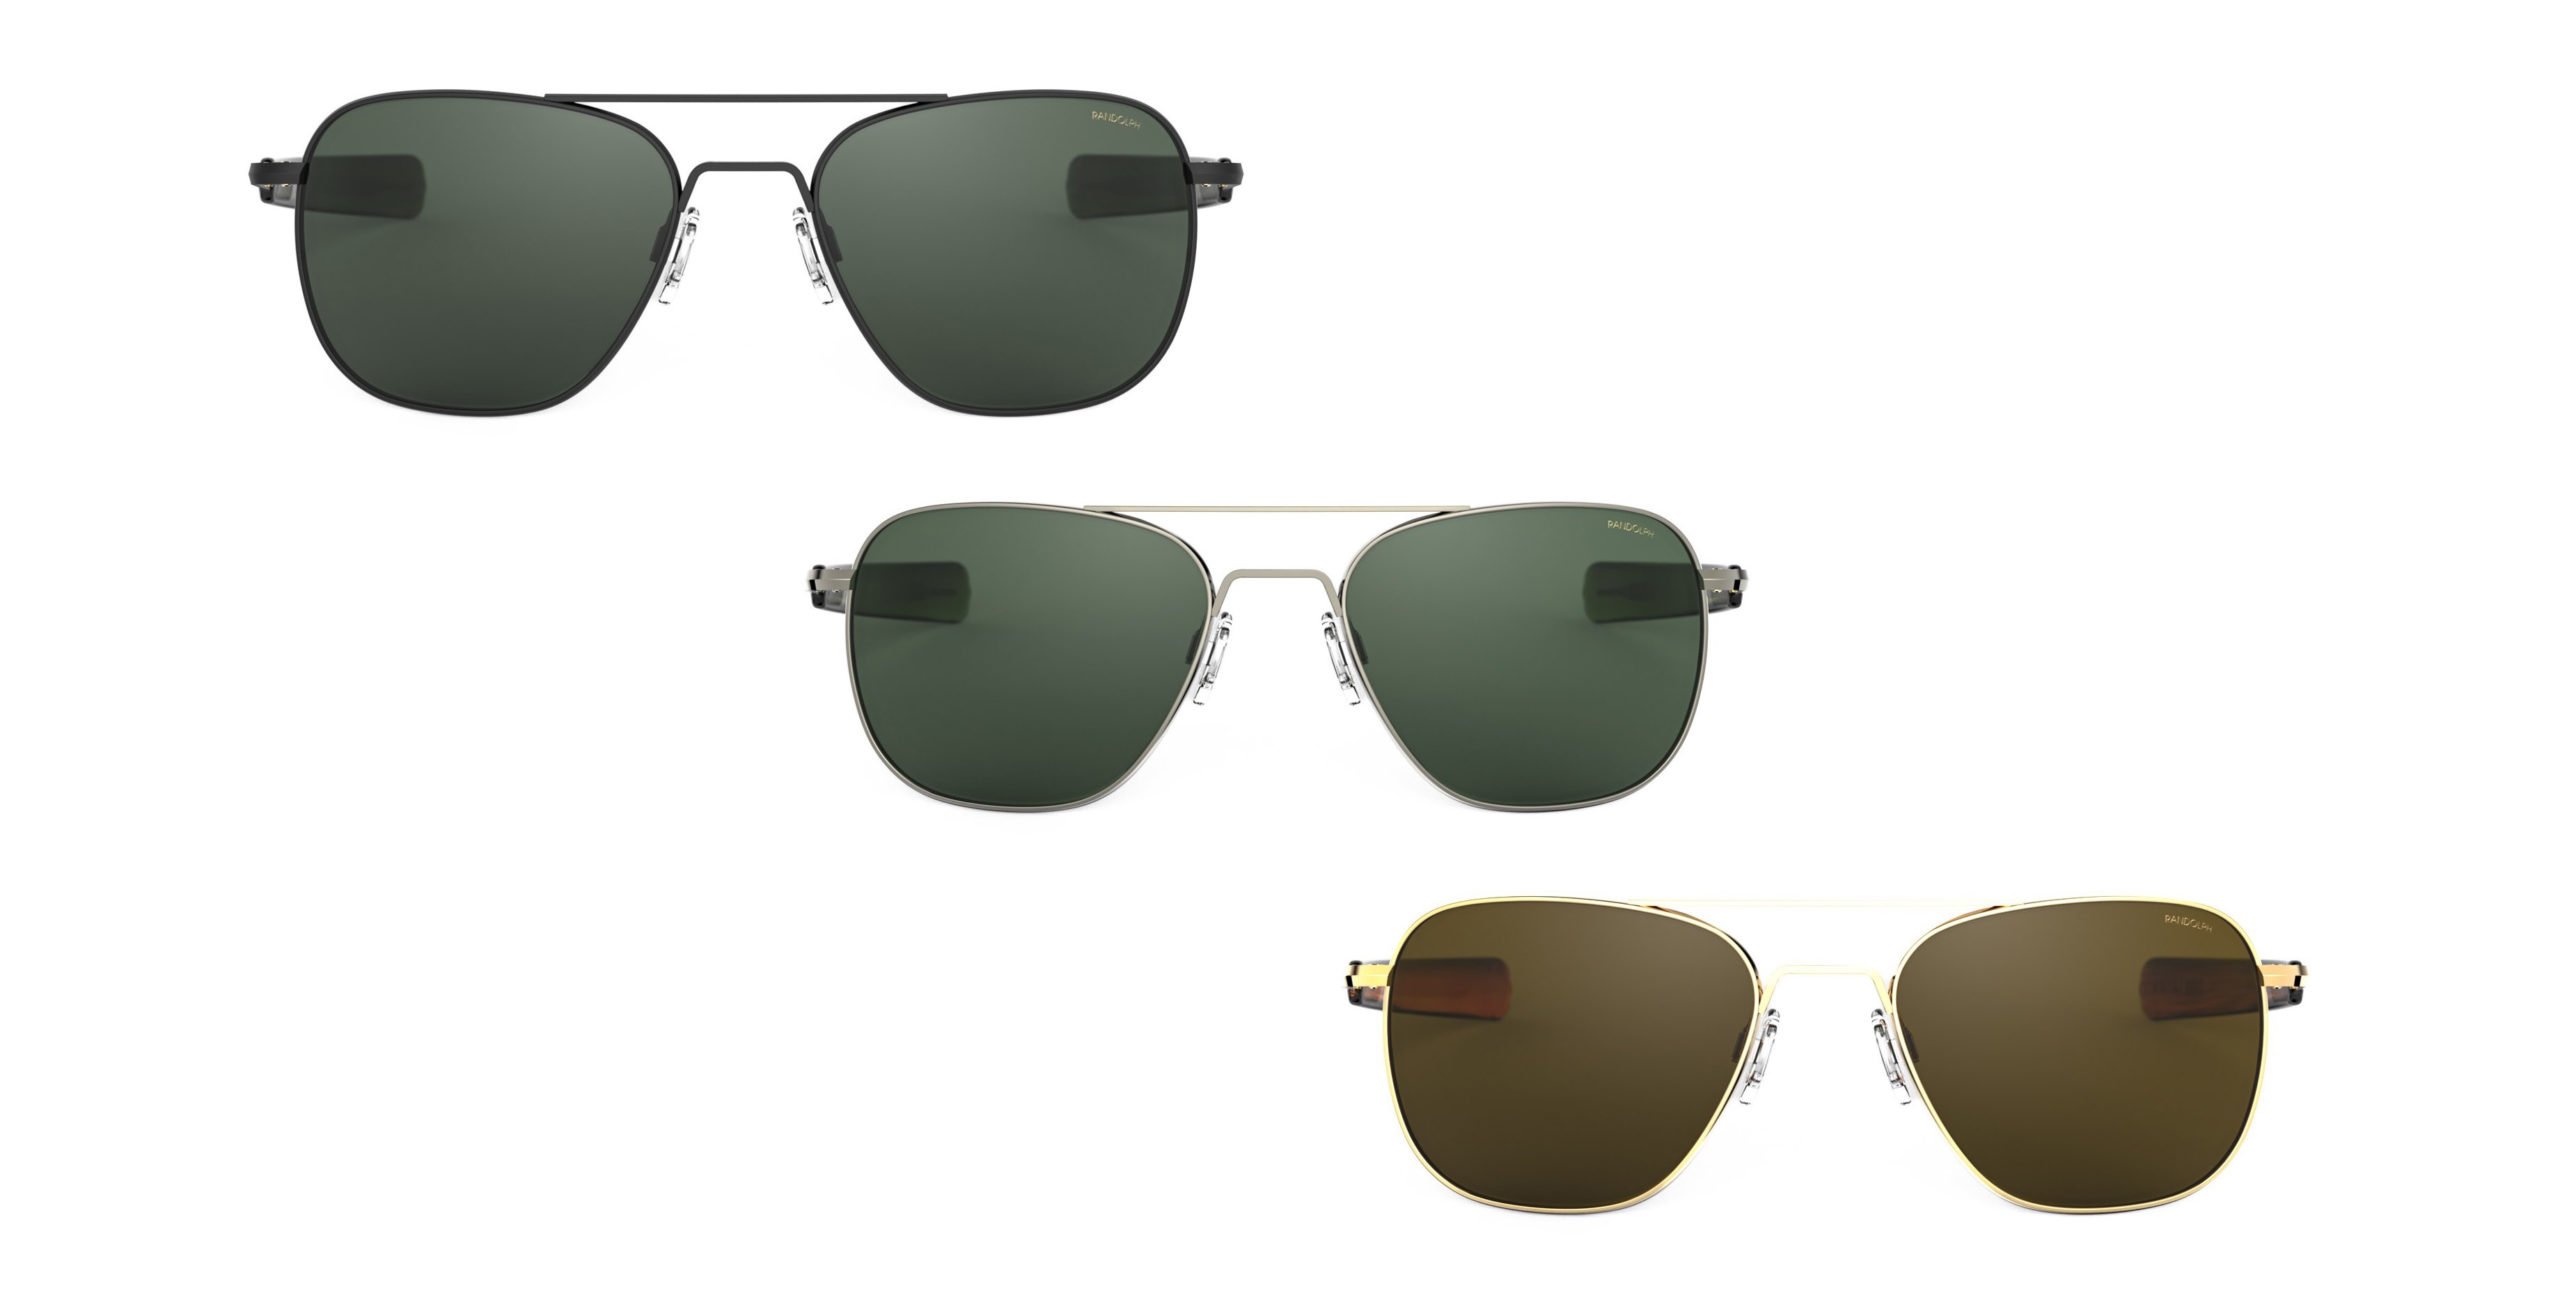 Discover more than 265 randolph aviator sunglasses super hot